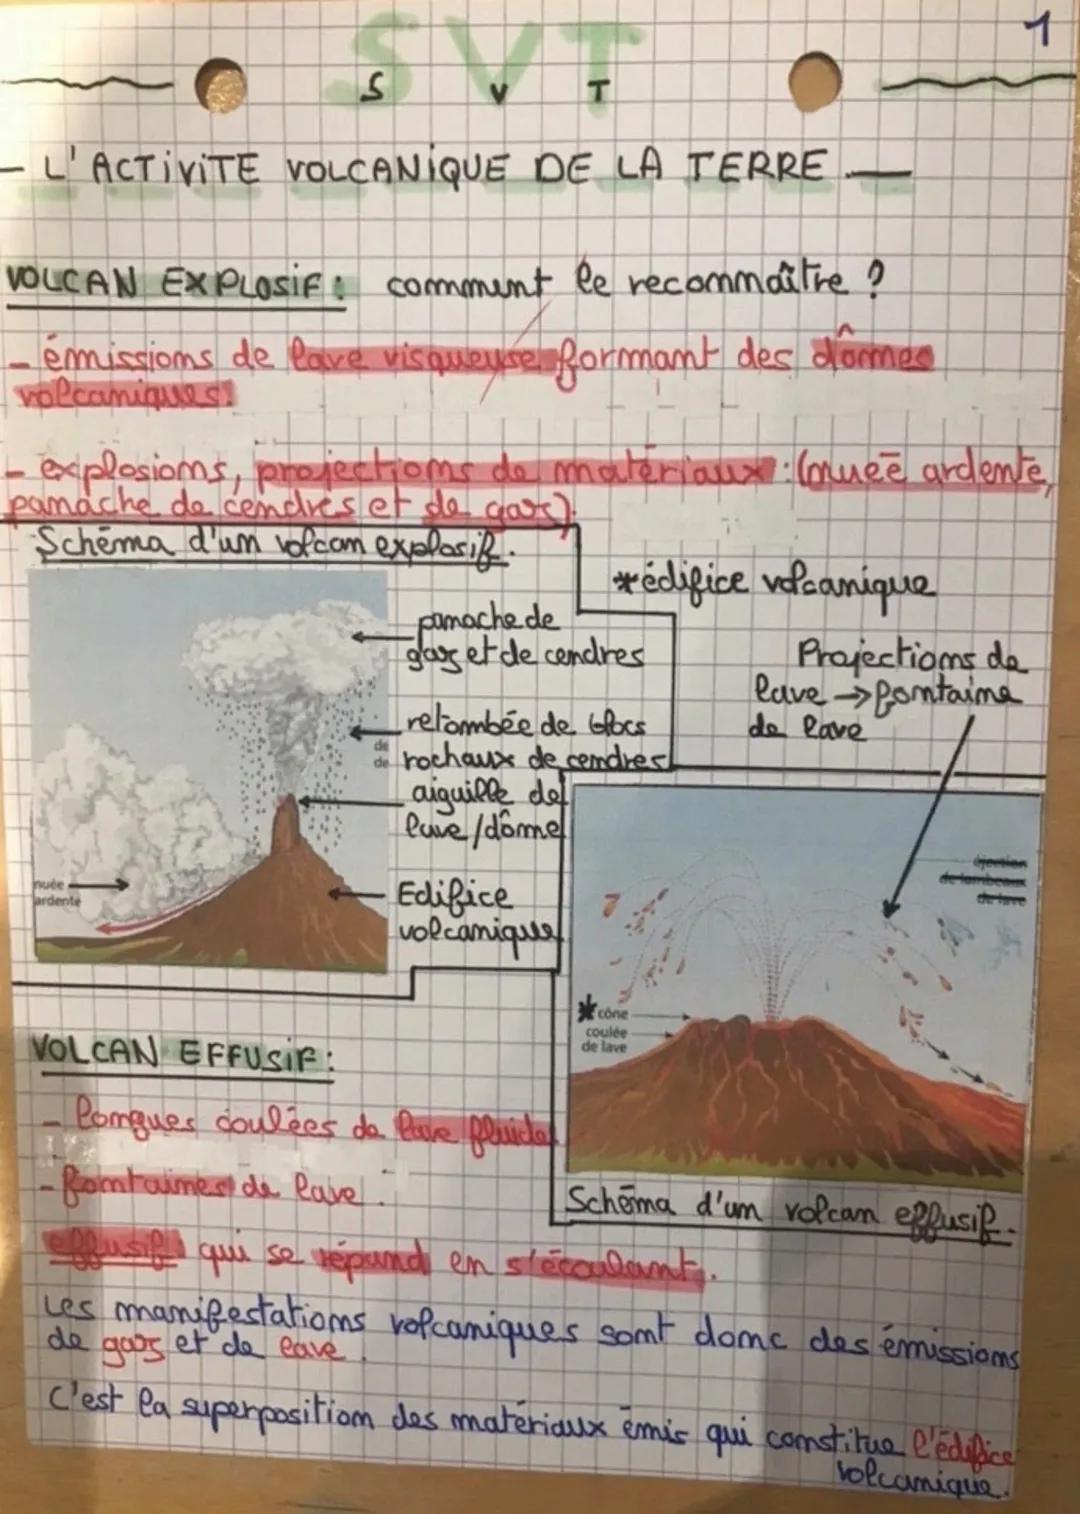 S
- L'ACTIVITE VOLCANIQUE DE LA TERRE
VOLCAN EXPLOSIF: comment le recommaître ?
- émissions de lave visqueyse formant des domes
volcaniques!